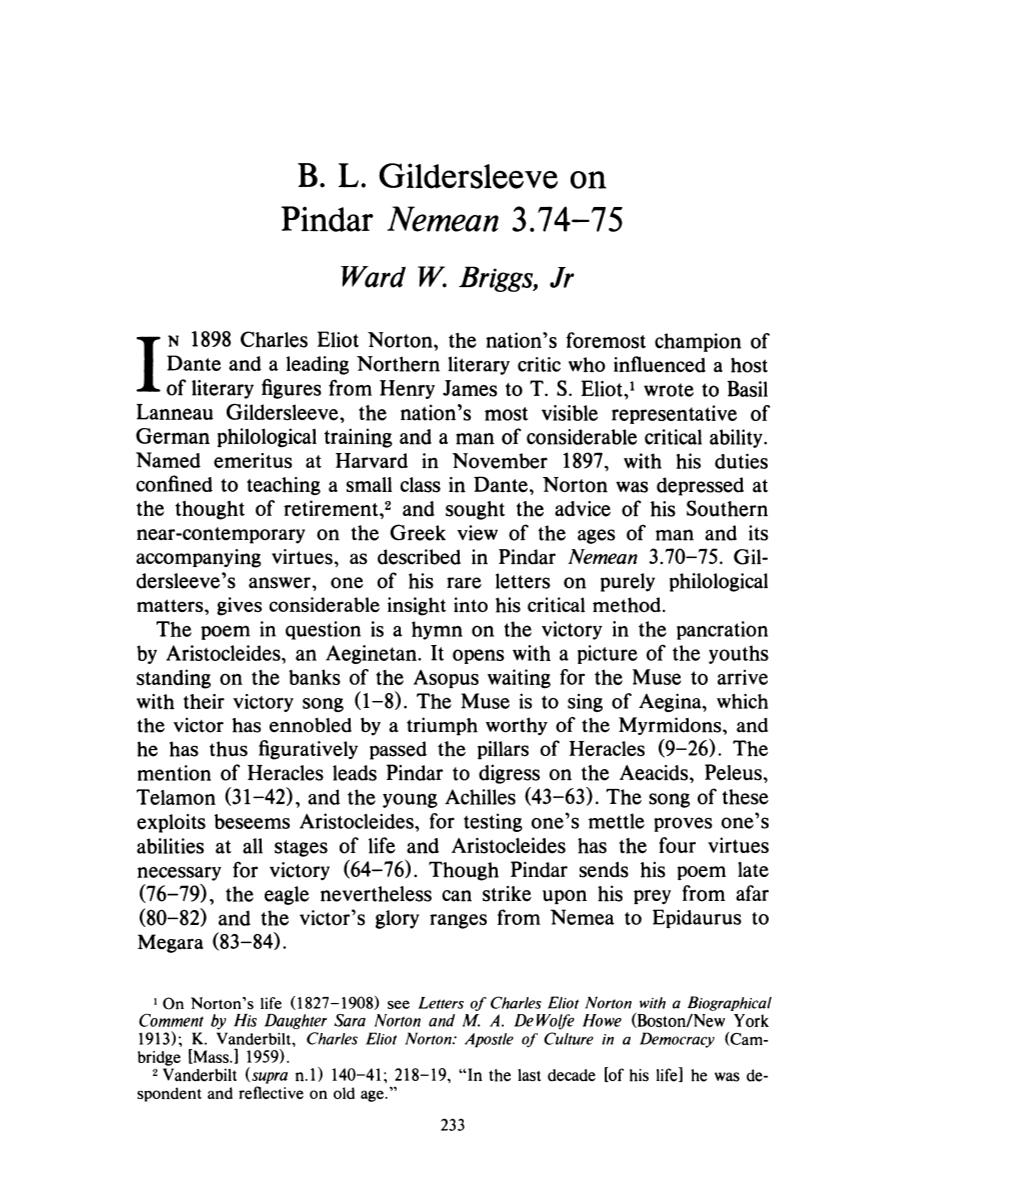 B. L. Gildersleeve on Pindar Nemean 3.74-75